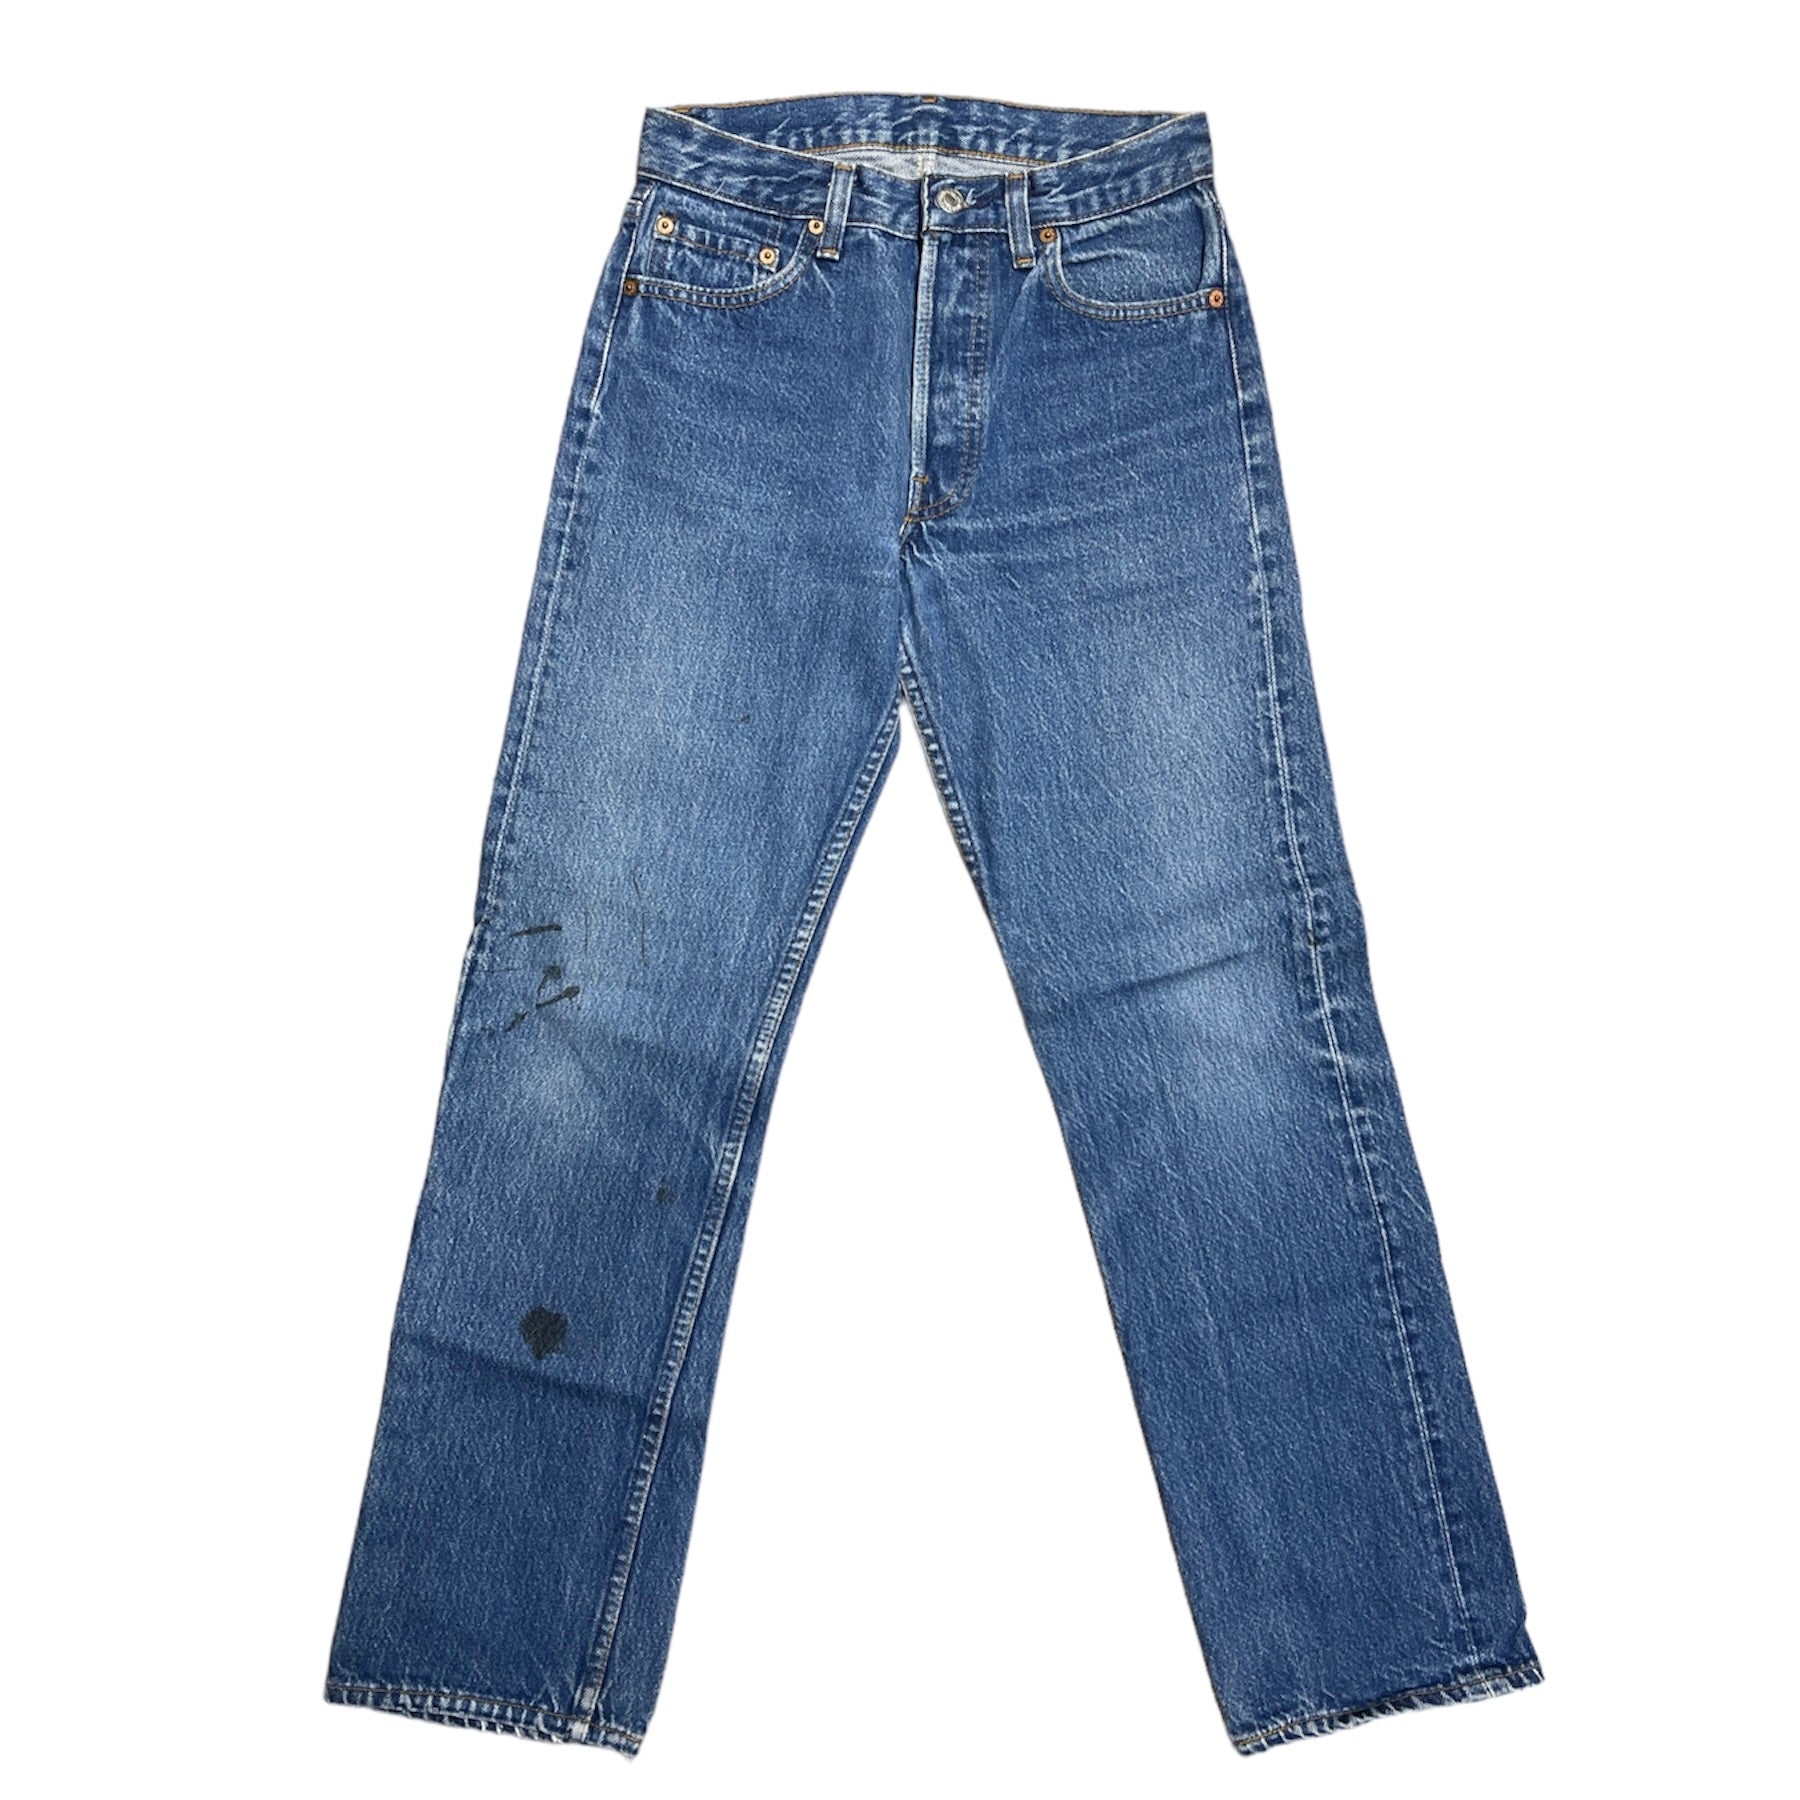 Vintage Levis 501 Blue Jeans (W28/L30)